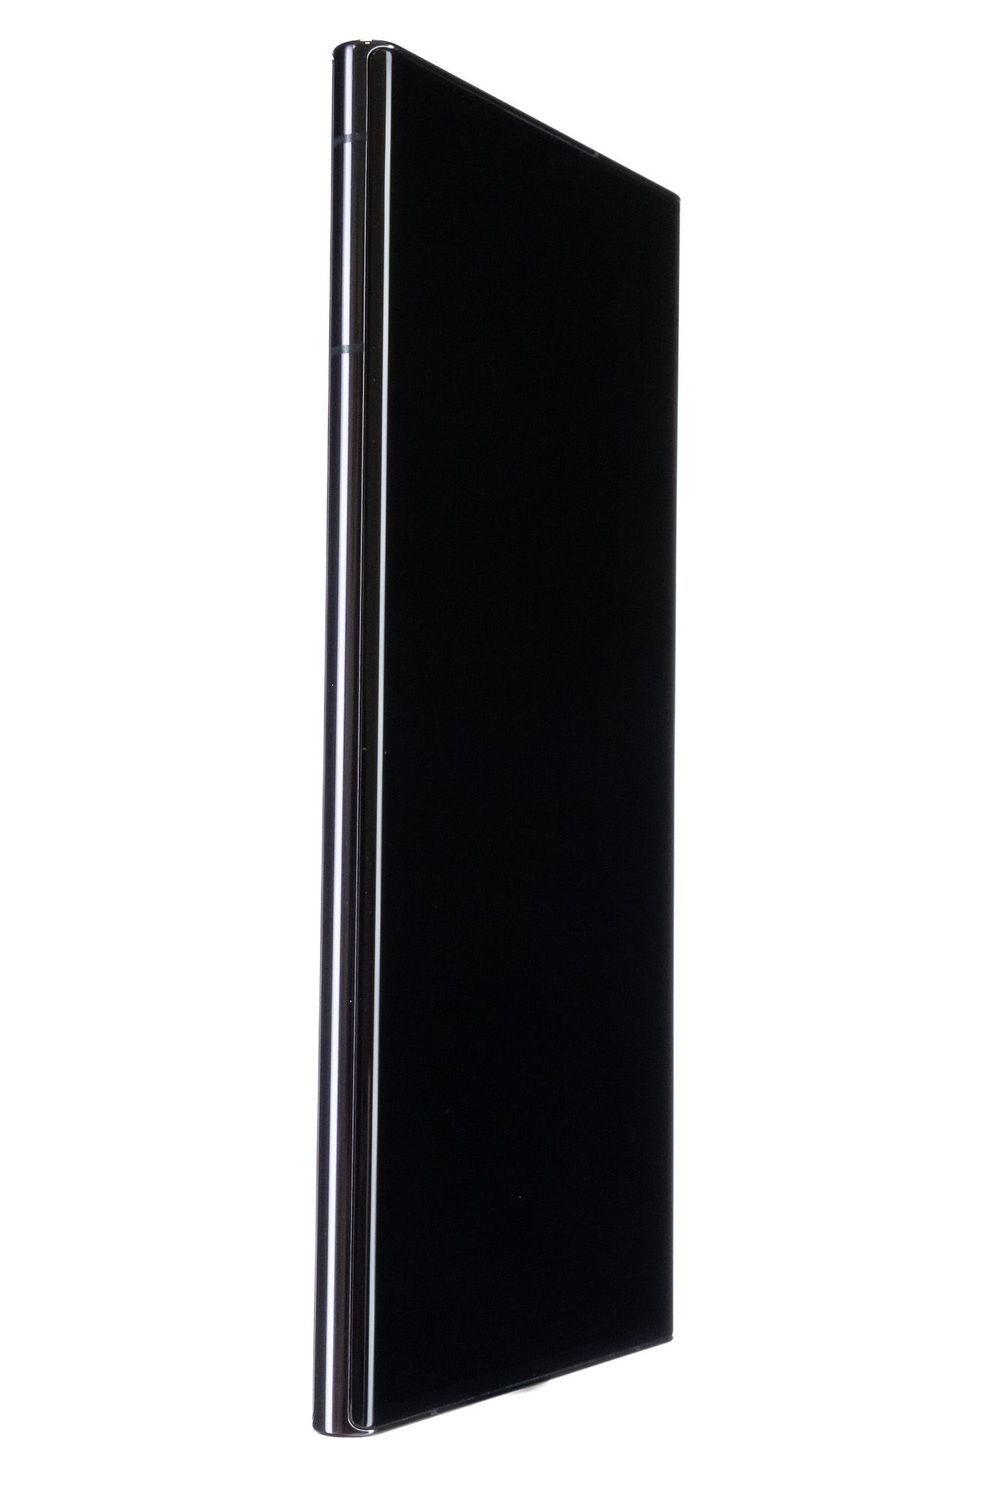 Κινητό τηλέφωνο Samsung Galaxy S22 Ultra 5G Dual Sim, Phantom Black, 128 GB, Foarte Bun